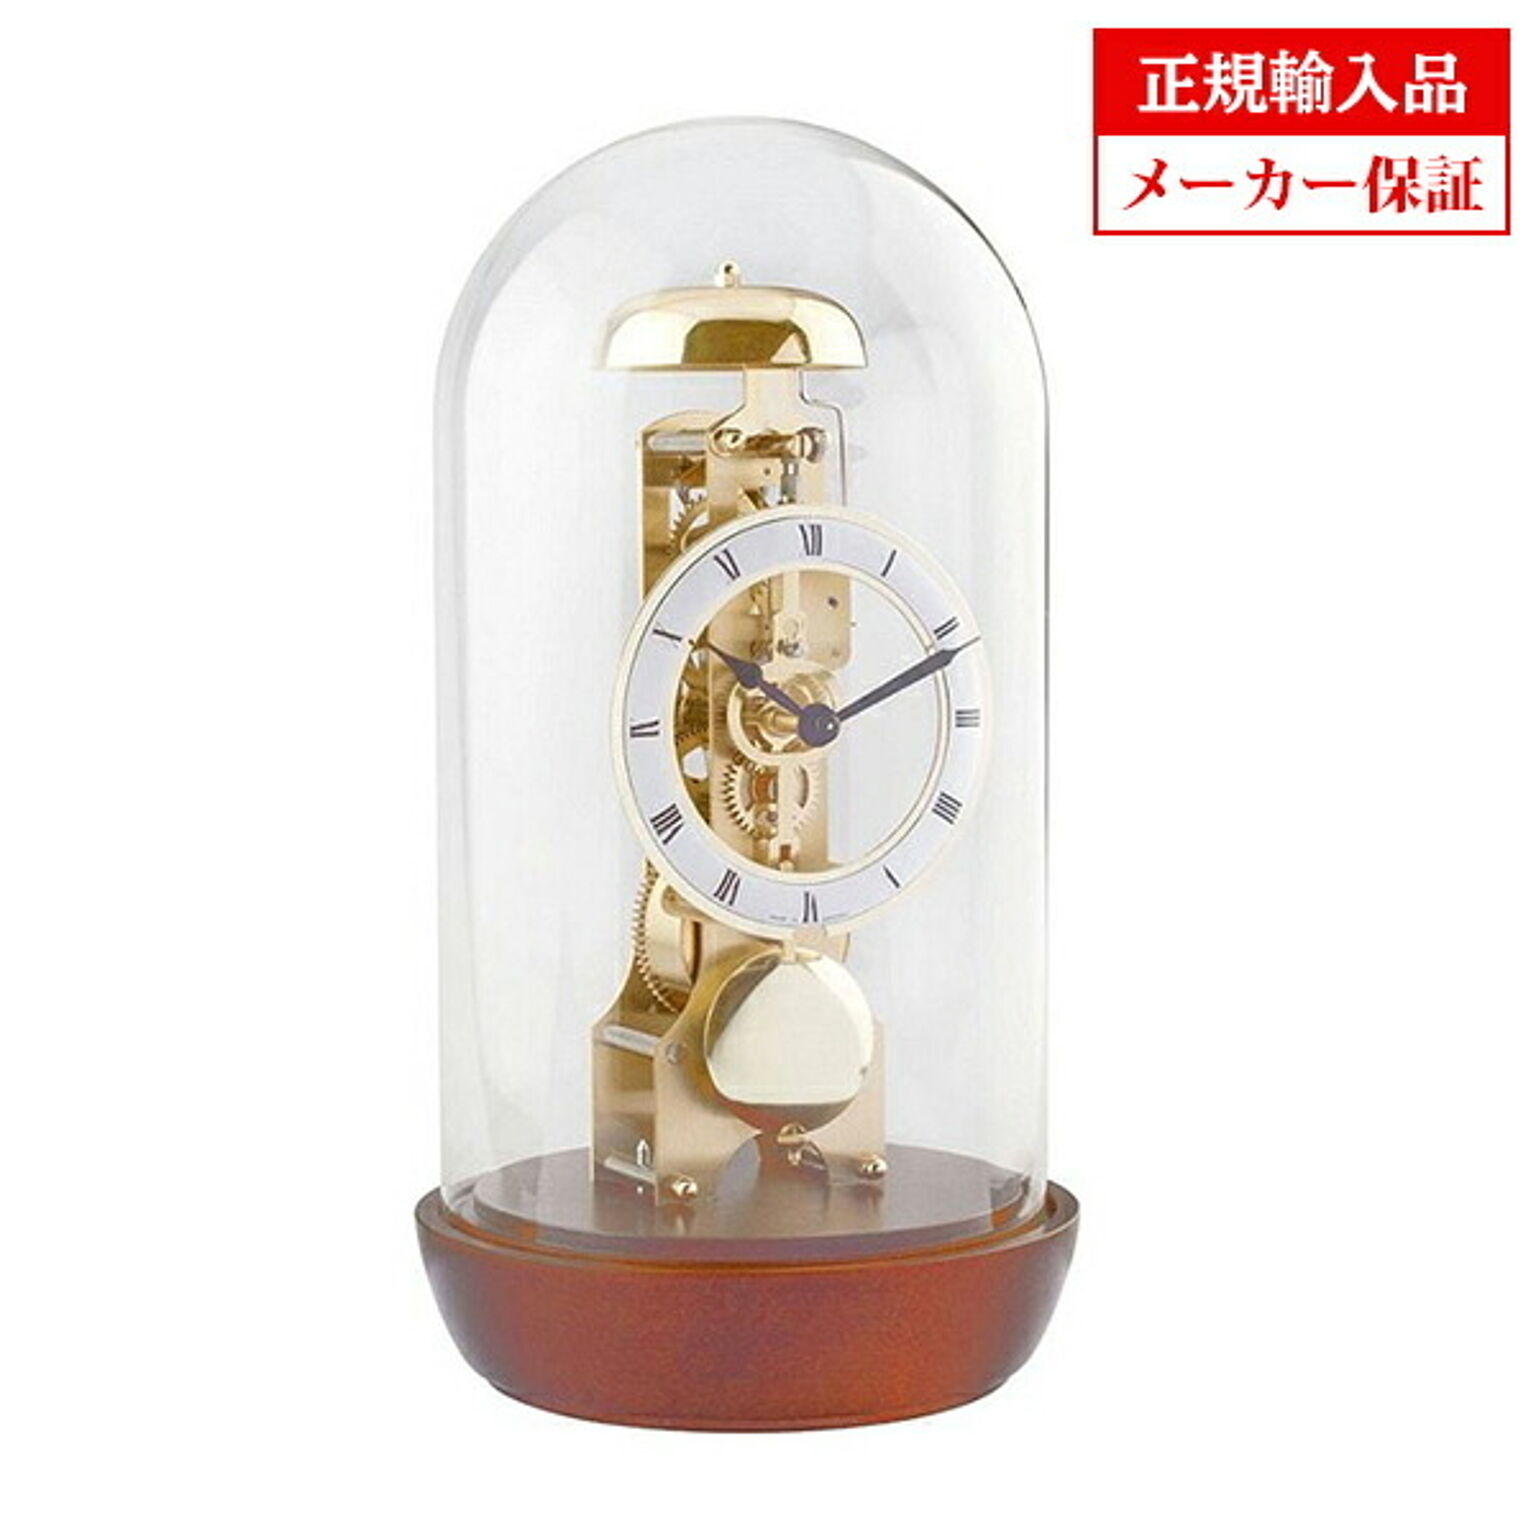 【正規輸入品】ドイツ ヘルムレ HERMLE 23018-160791 置き時計 真鍮14日巻きスケルトン機械式ムーブメント